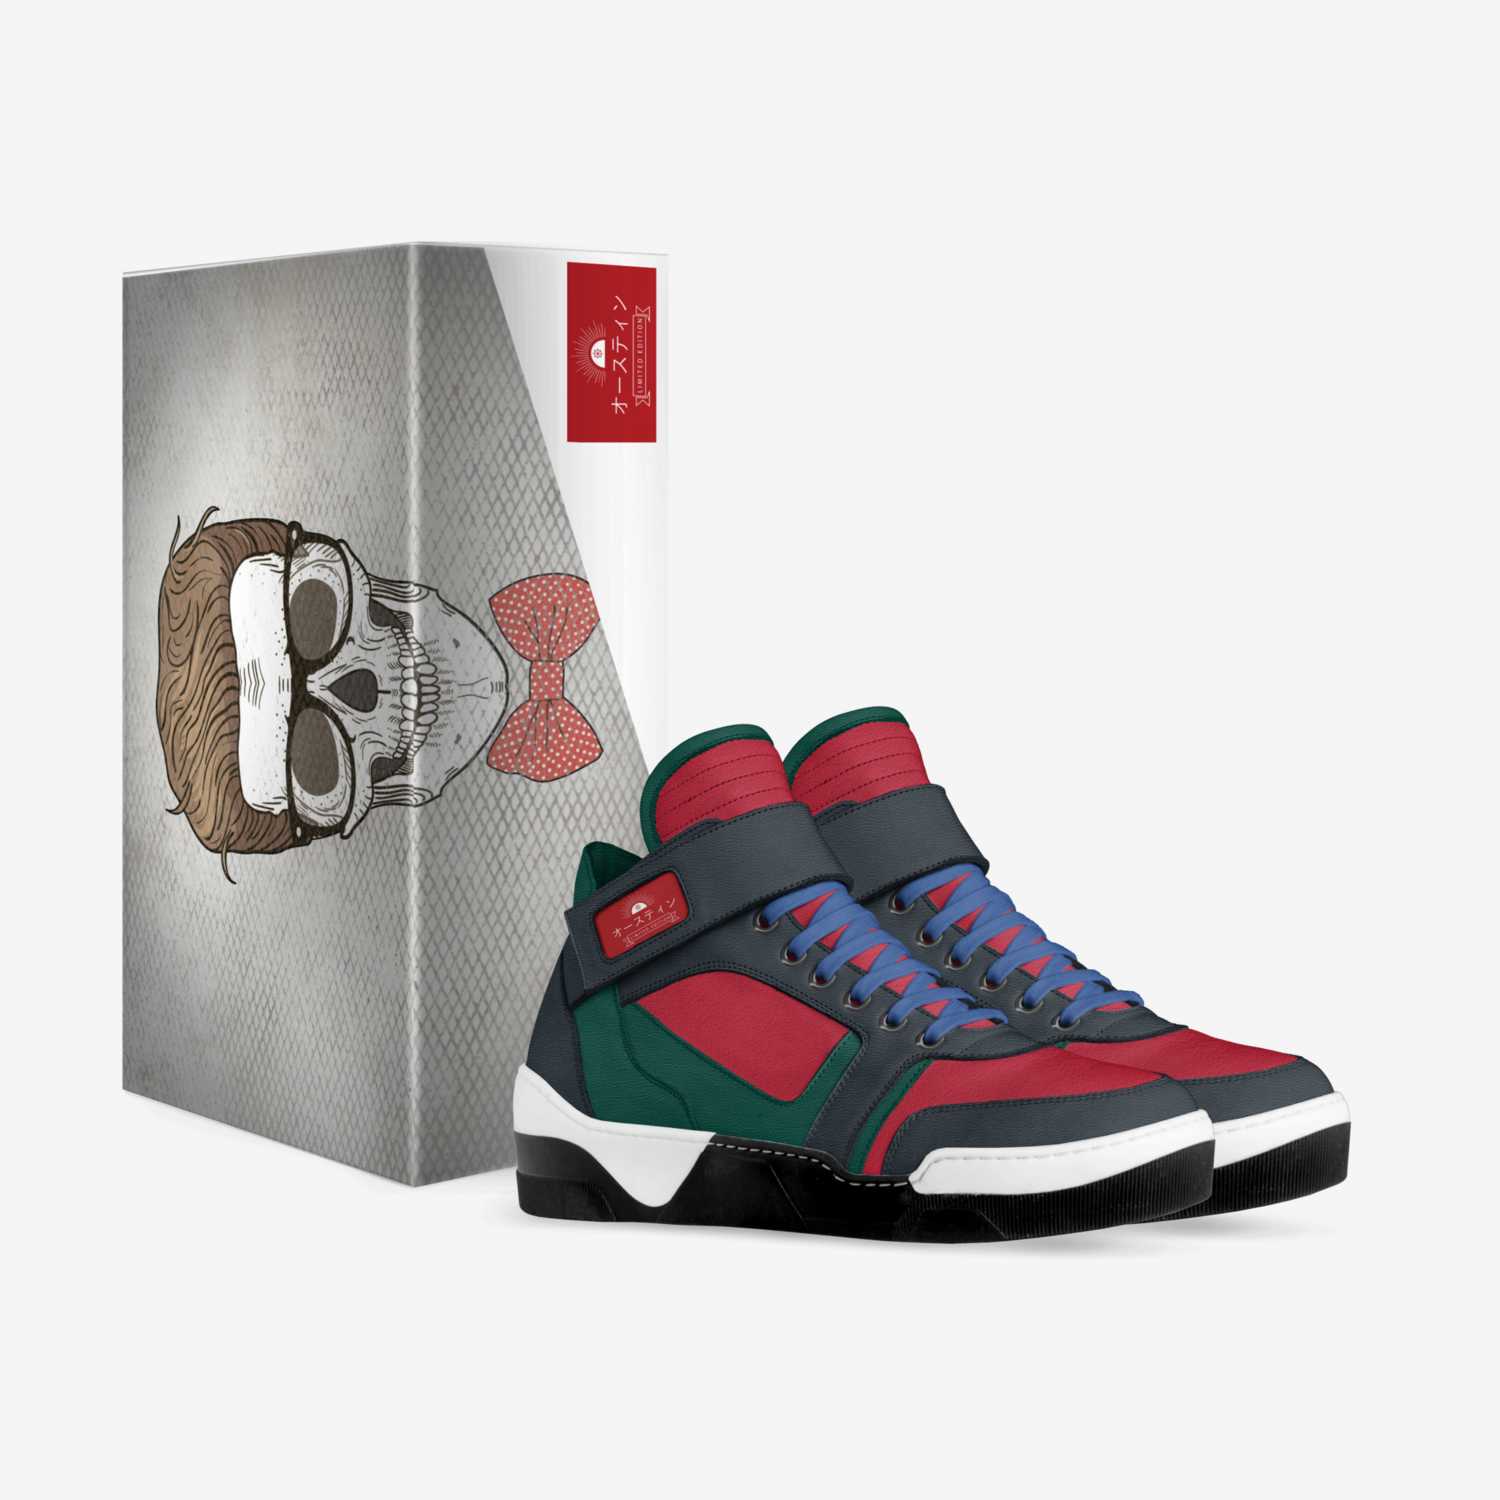 オースティン custom made in Italy shoes by Austin Nance | Box view